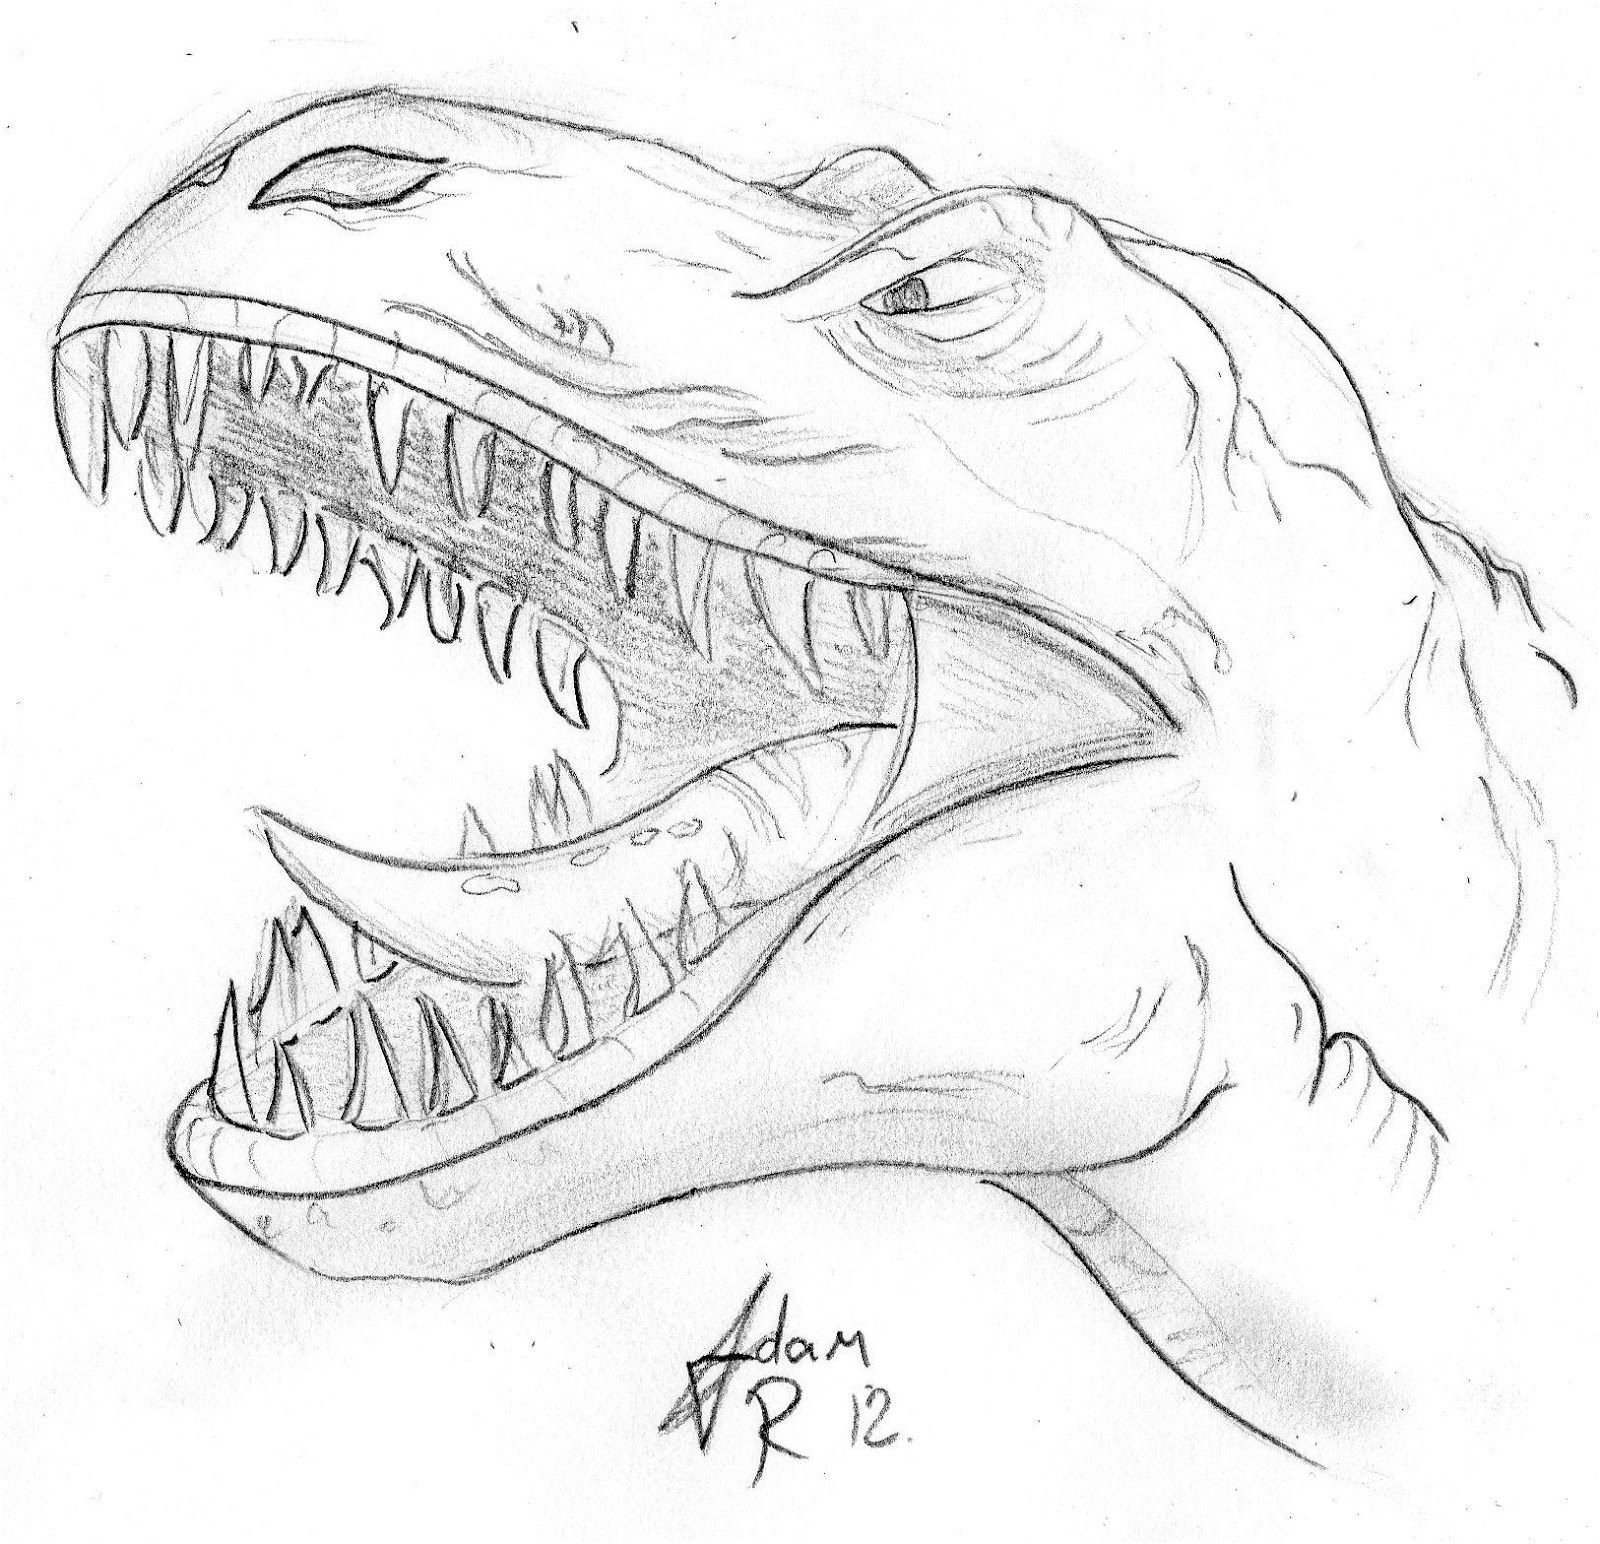 Рисунок динозавра карандашом для срисовки